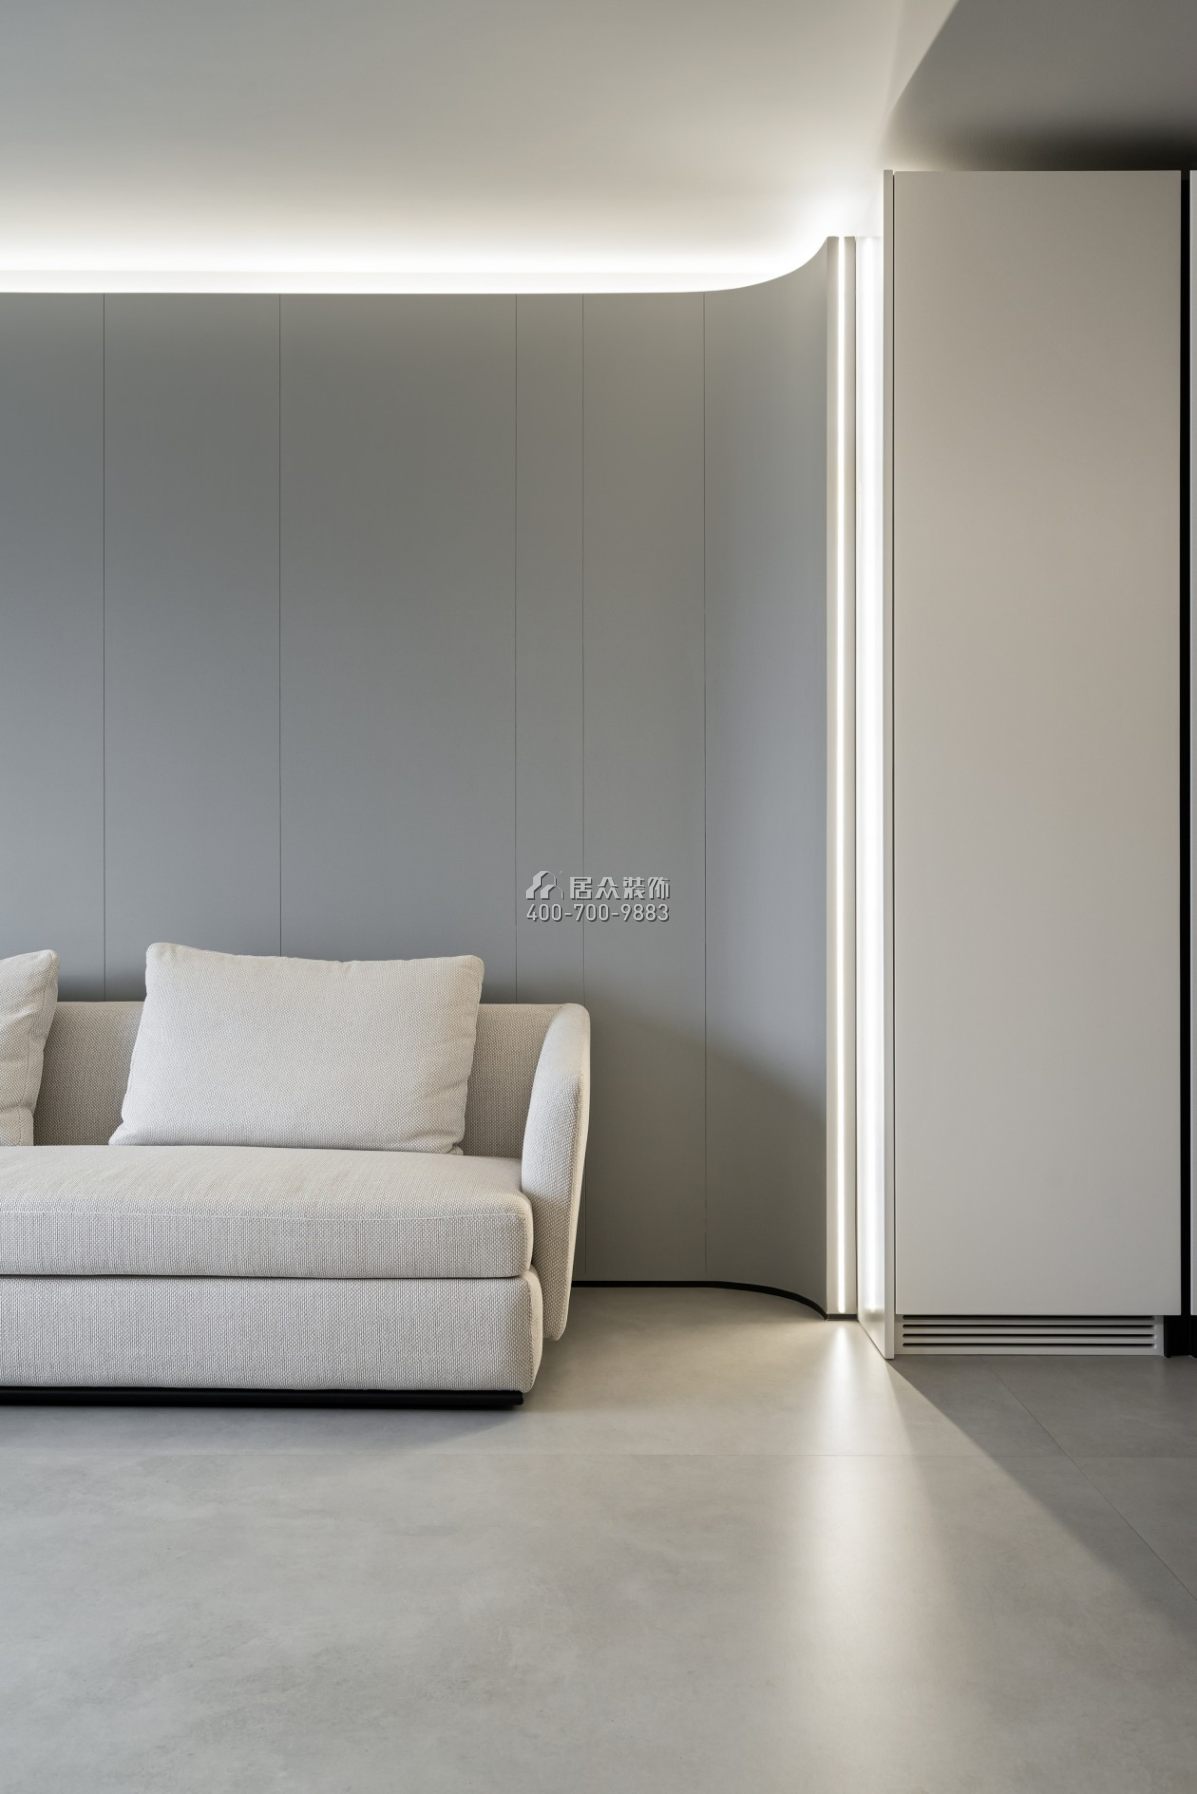 黃埔雅苑一期120平方米現代簡約風格平層戶型客廳裝修效果圖